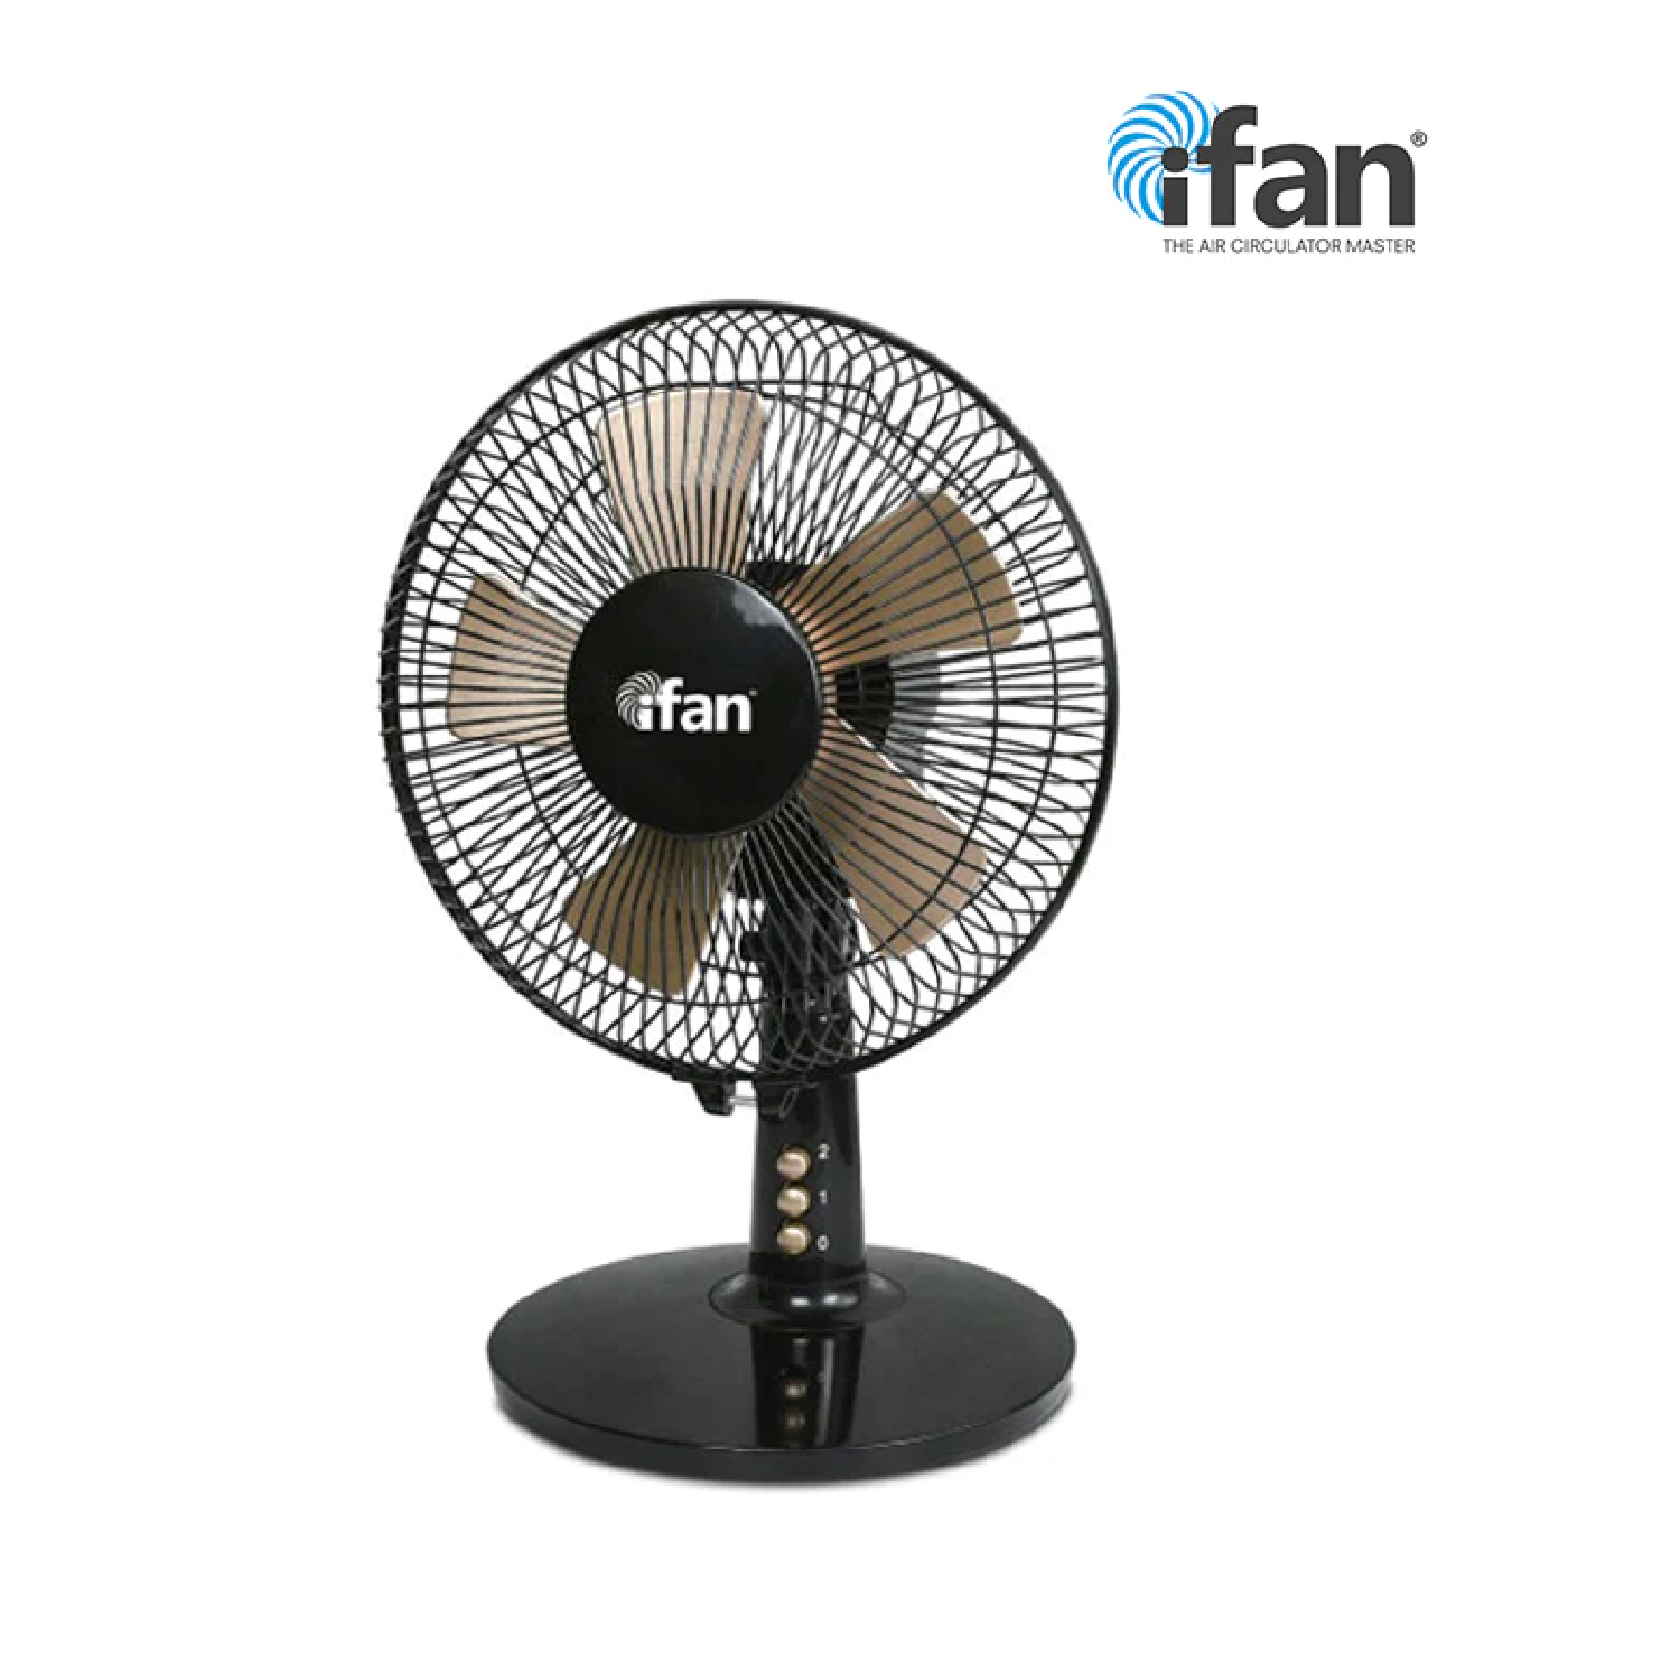 IFan DESK Fan 9"/228MM Table Fan With Air Circulator